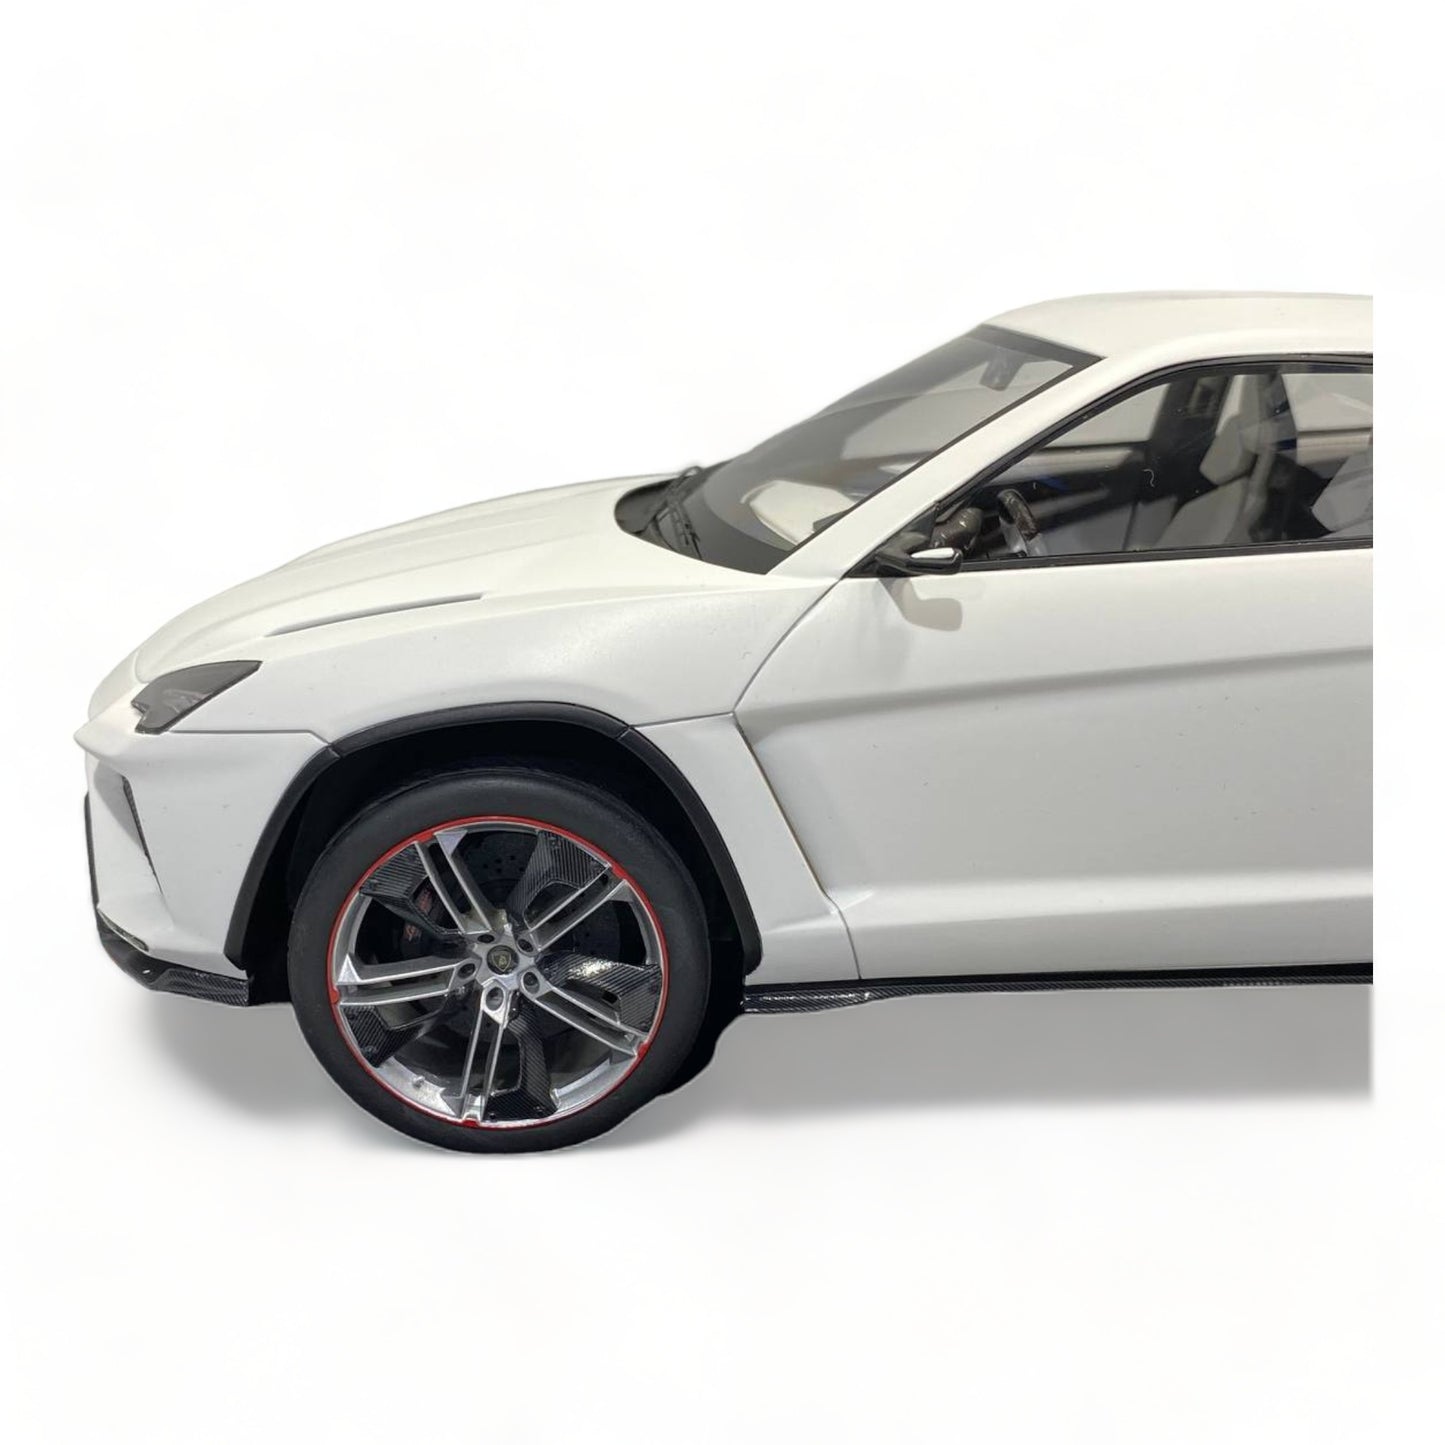 1/18 Lamborghini Urus White Matt by MR Collection|Sold in Dturman.com Dubai UAE.